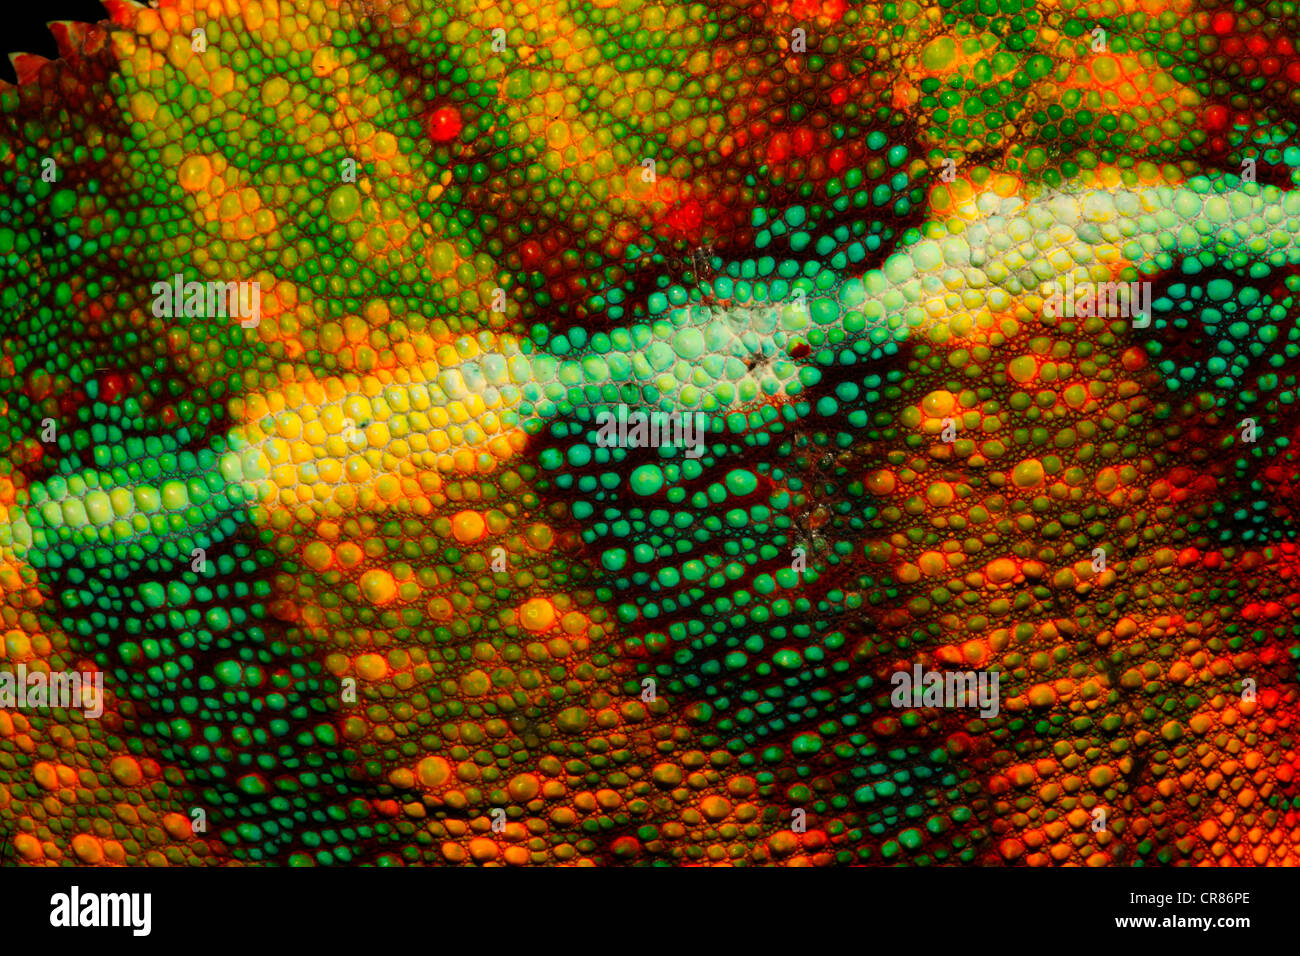 Chameleon skin, Panther Chameleon (Furcifer pardalis), Ambilobe region, Ambilobe-Ambilorama colour variation, Madagascar, Africa Stock Photo